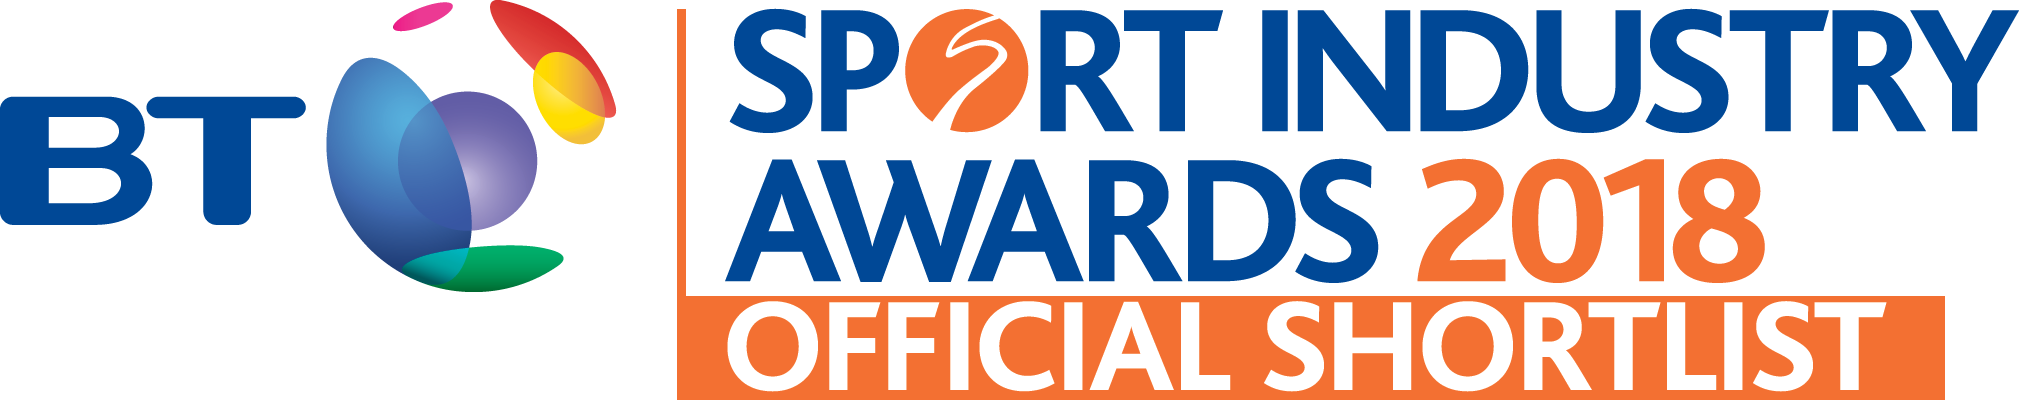 award_btsport